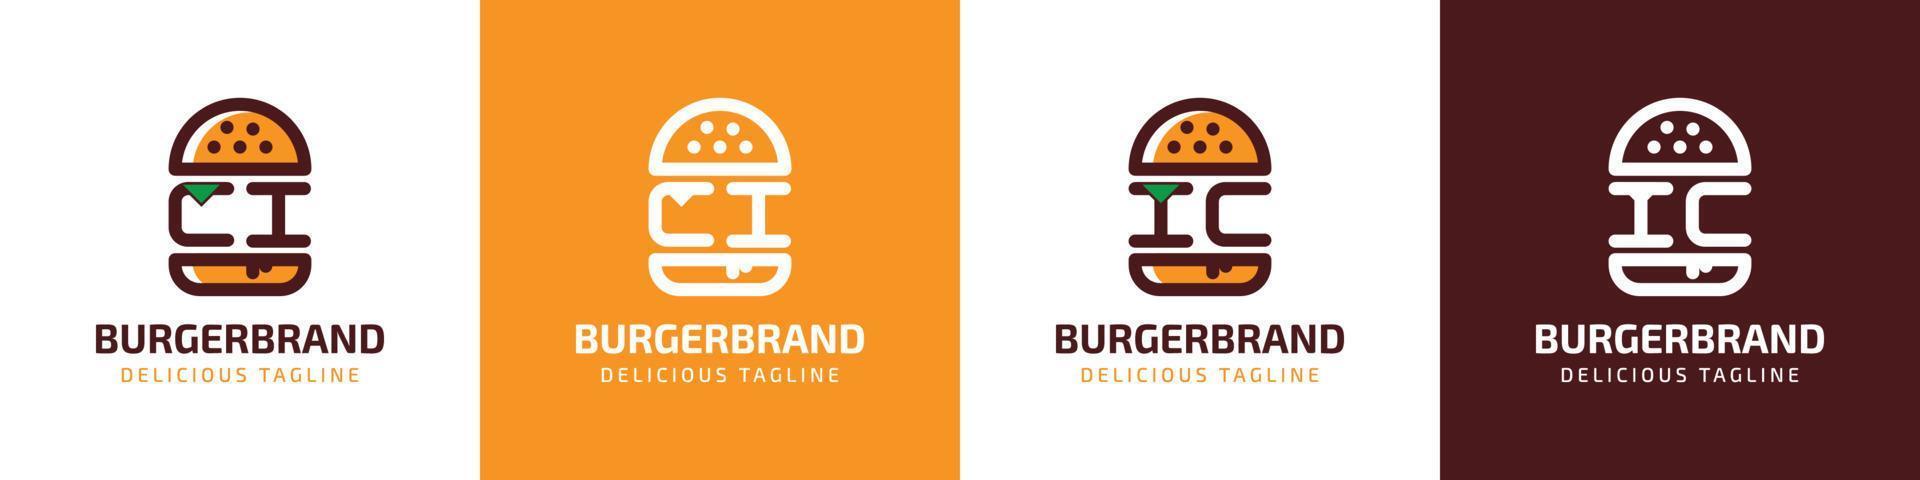 carta ci e ic hamburguer logotipo, adequado para qualquer o negócio relacionado para hamburguer com ci ou ic iniciais. vetor